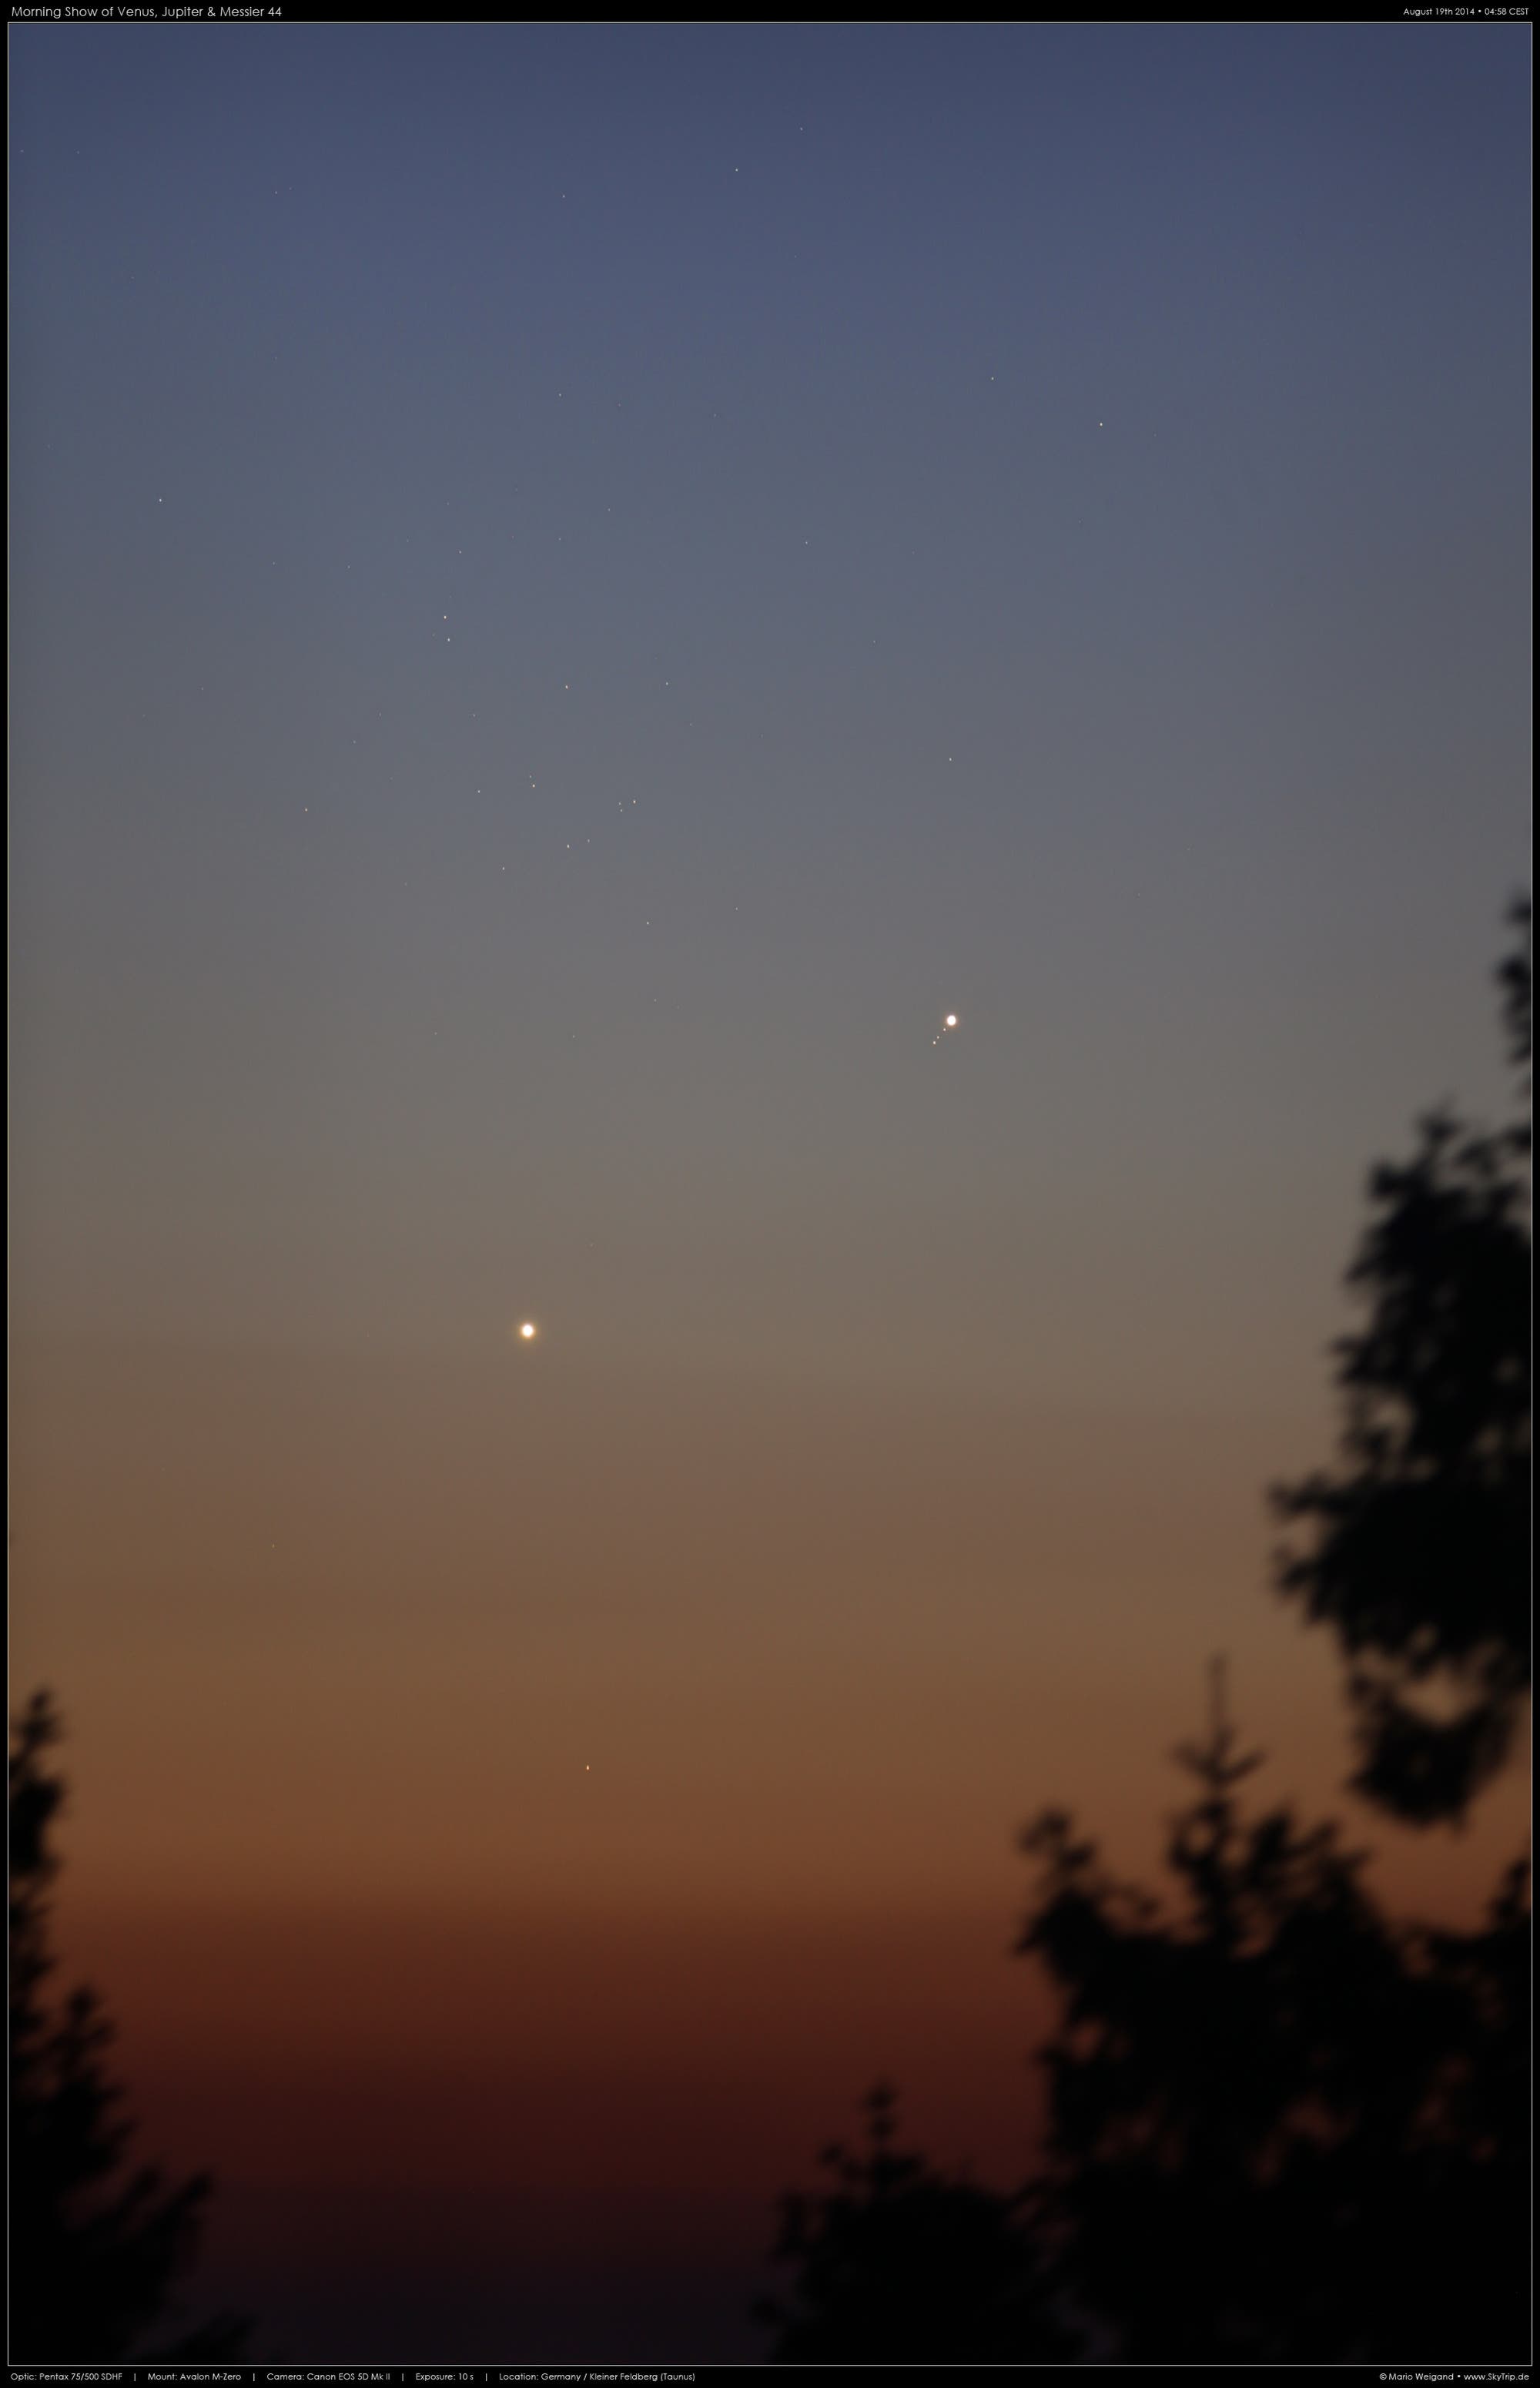 Konjunktion von Venus, Jupiter und Messier 44